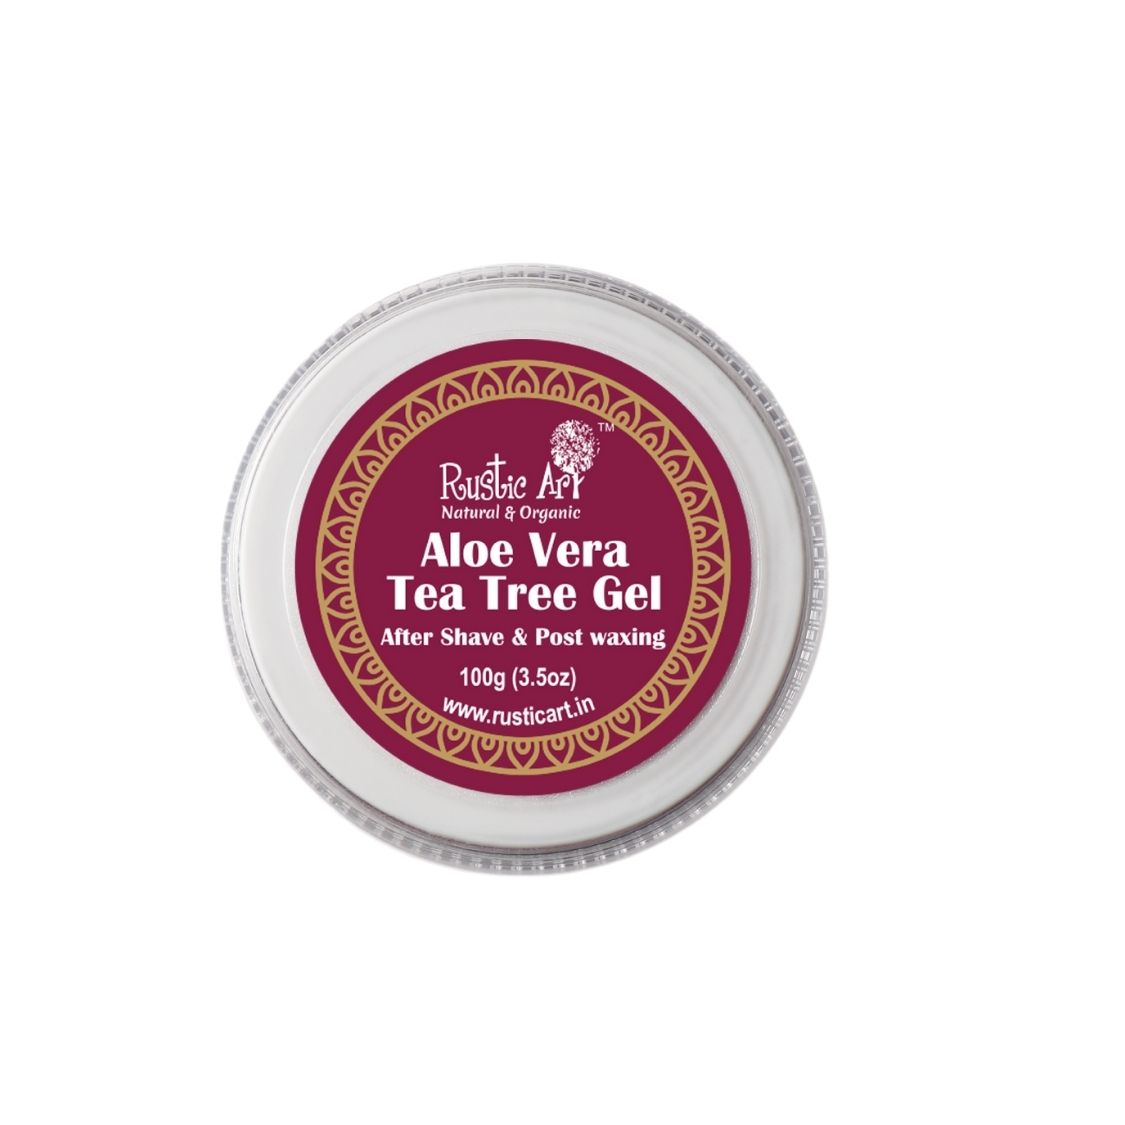 Rustic Art Aloe Vera Tea Tree Gel (100 gm) PACK OF 2